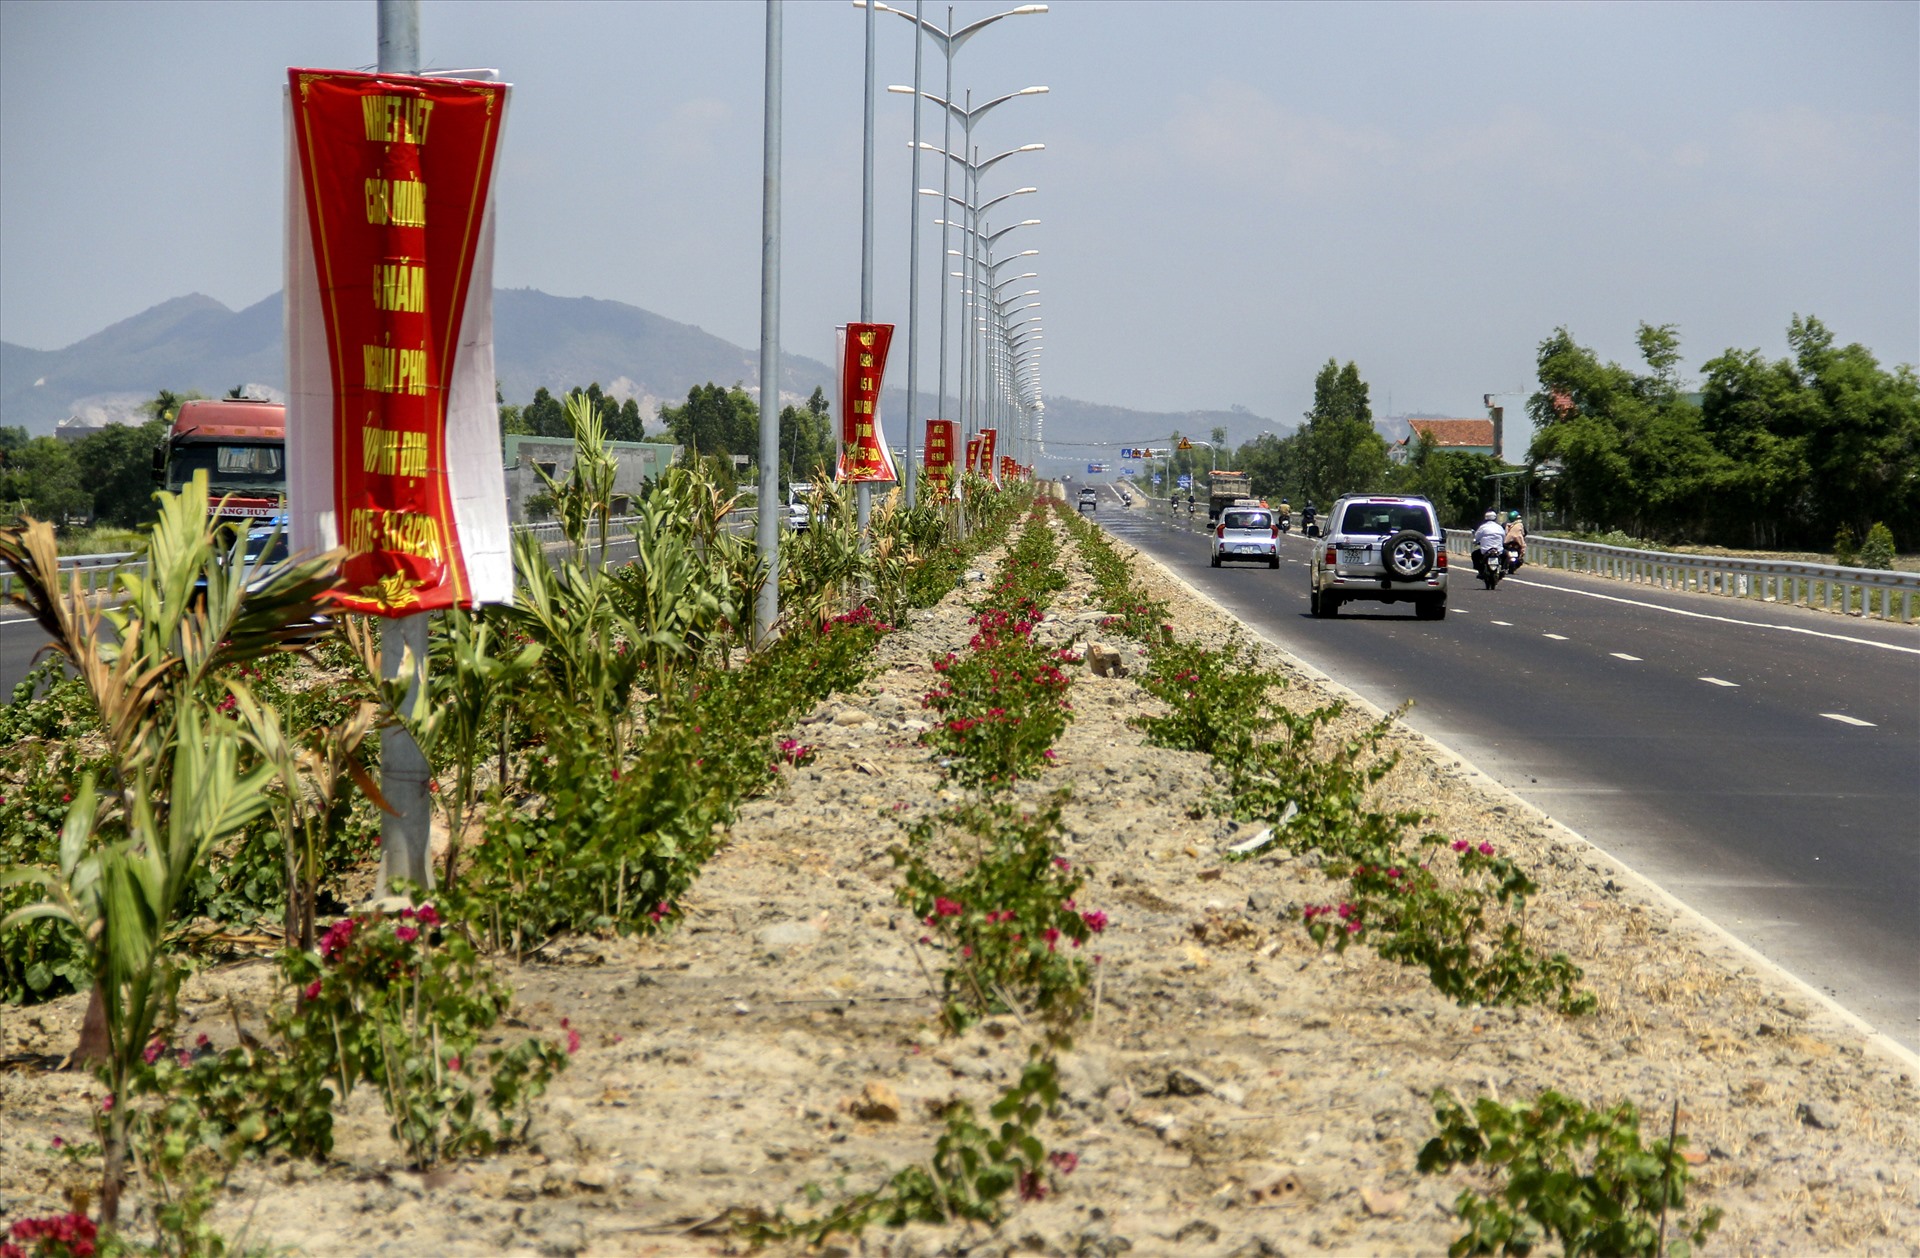 Vừa qua, UBND tỉnh Bình Định đã khánh thành và đưa vào sử dụng Quốc lộ 19 mới với chiều dài 17,42 km, đoạn từ cảng Quy Nhơn đến điểm giao Quốc lộ 1 với tổng mức đầu tư 4.410 tỉ đồng.